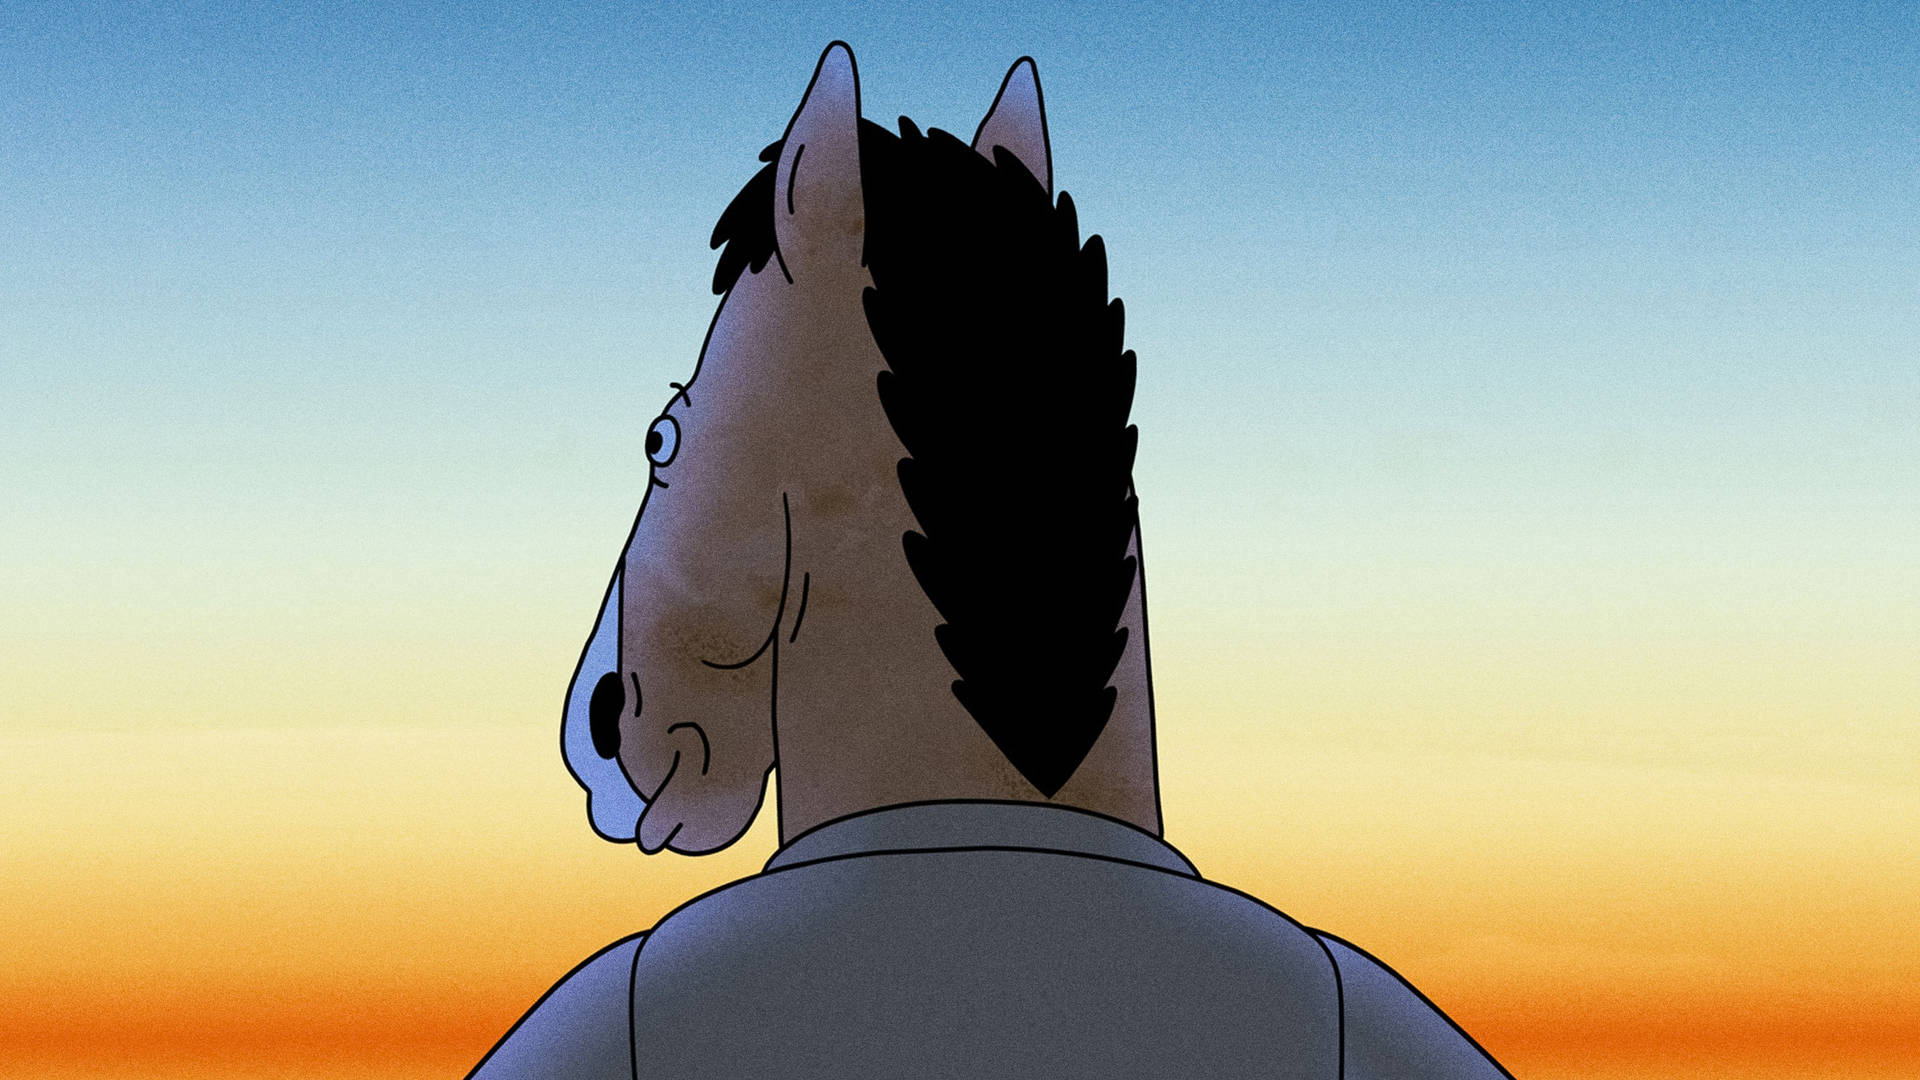 BoJack Horseman in silhouette. Wallpaper